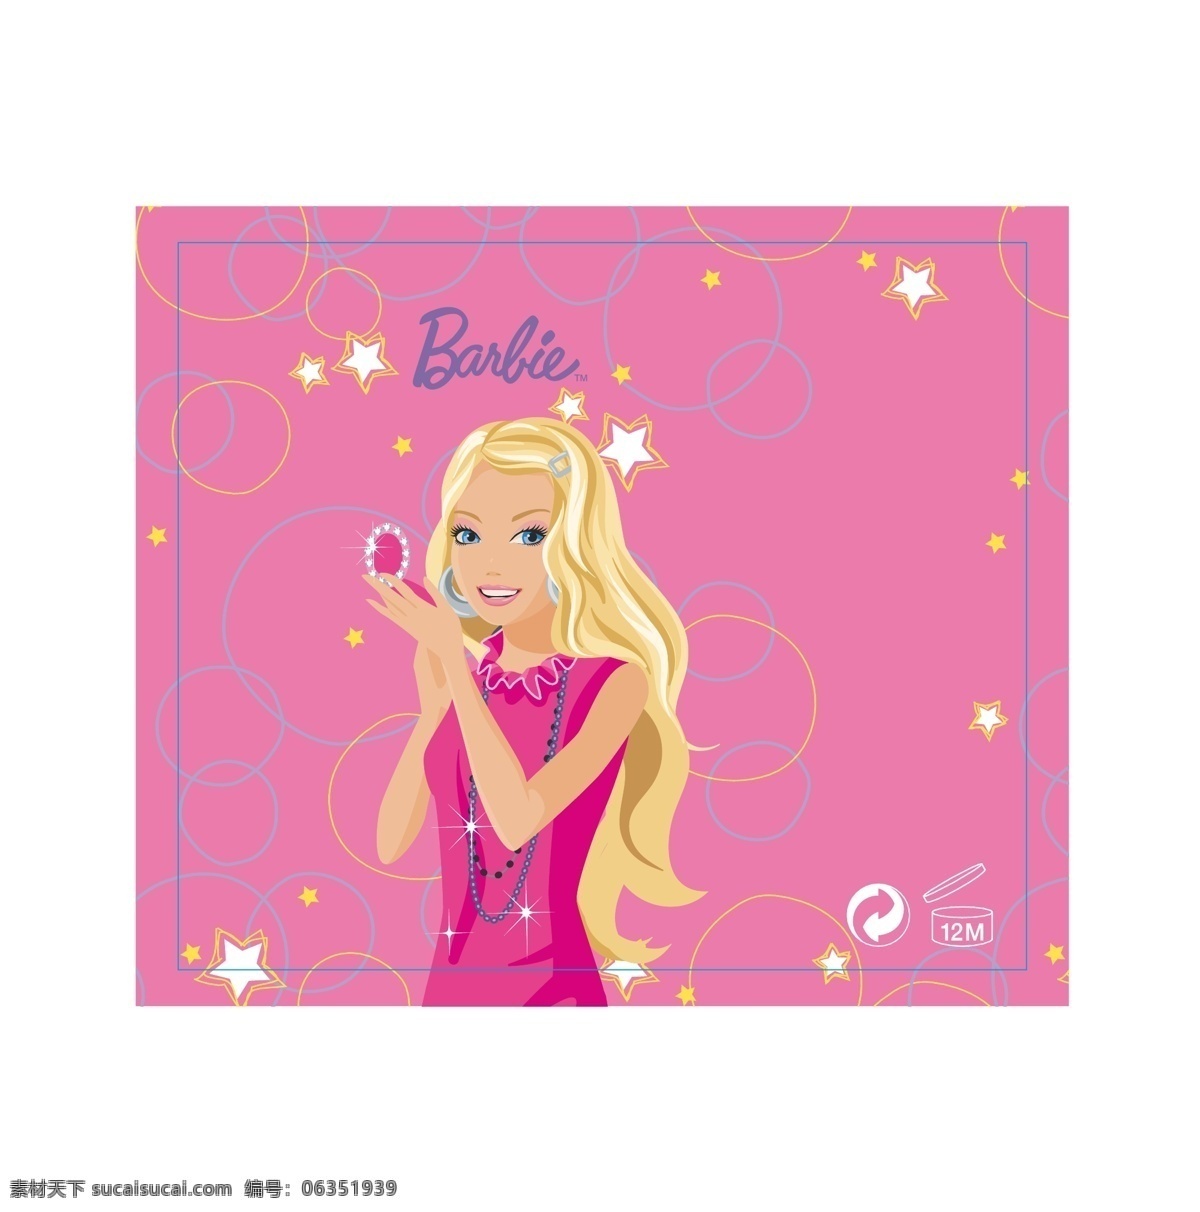 芭比公主 卡通女孩 芭比 barbie 卡通 标贴 美女 美女卡通图 公主 芭比娃娃 妇女女性 矢量人物 矢量